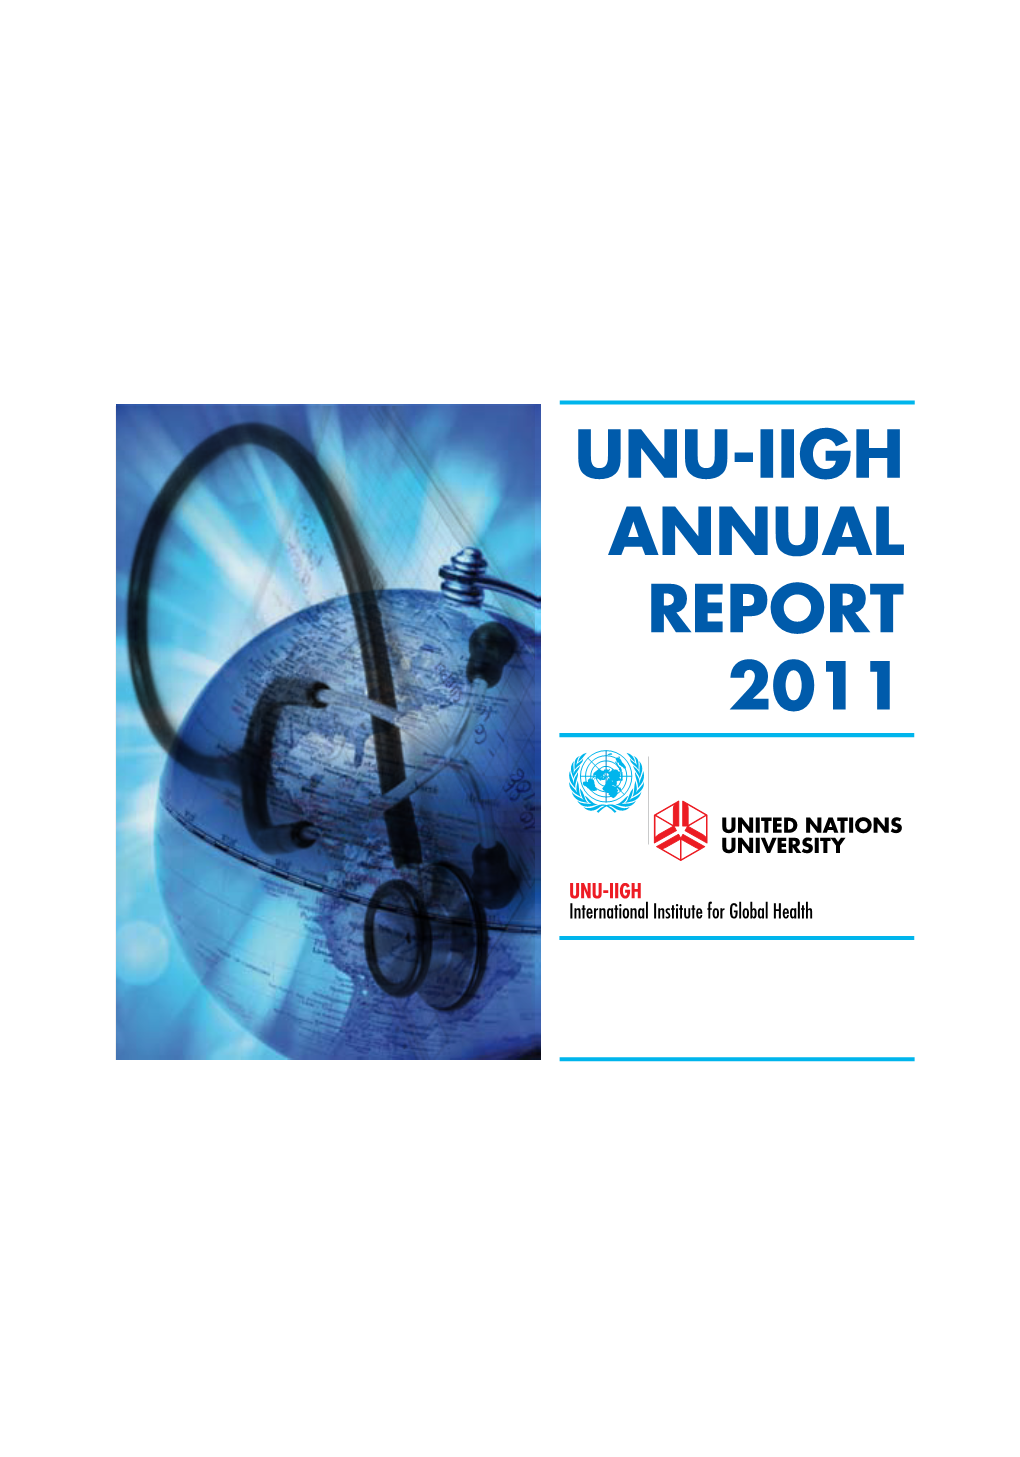 Unu-Iigh Annual Report 2011